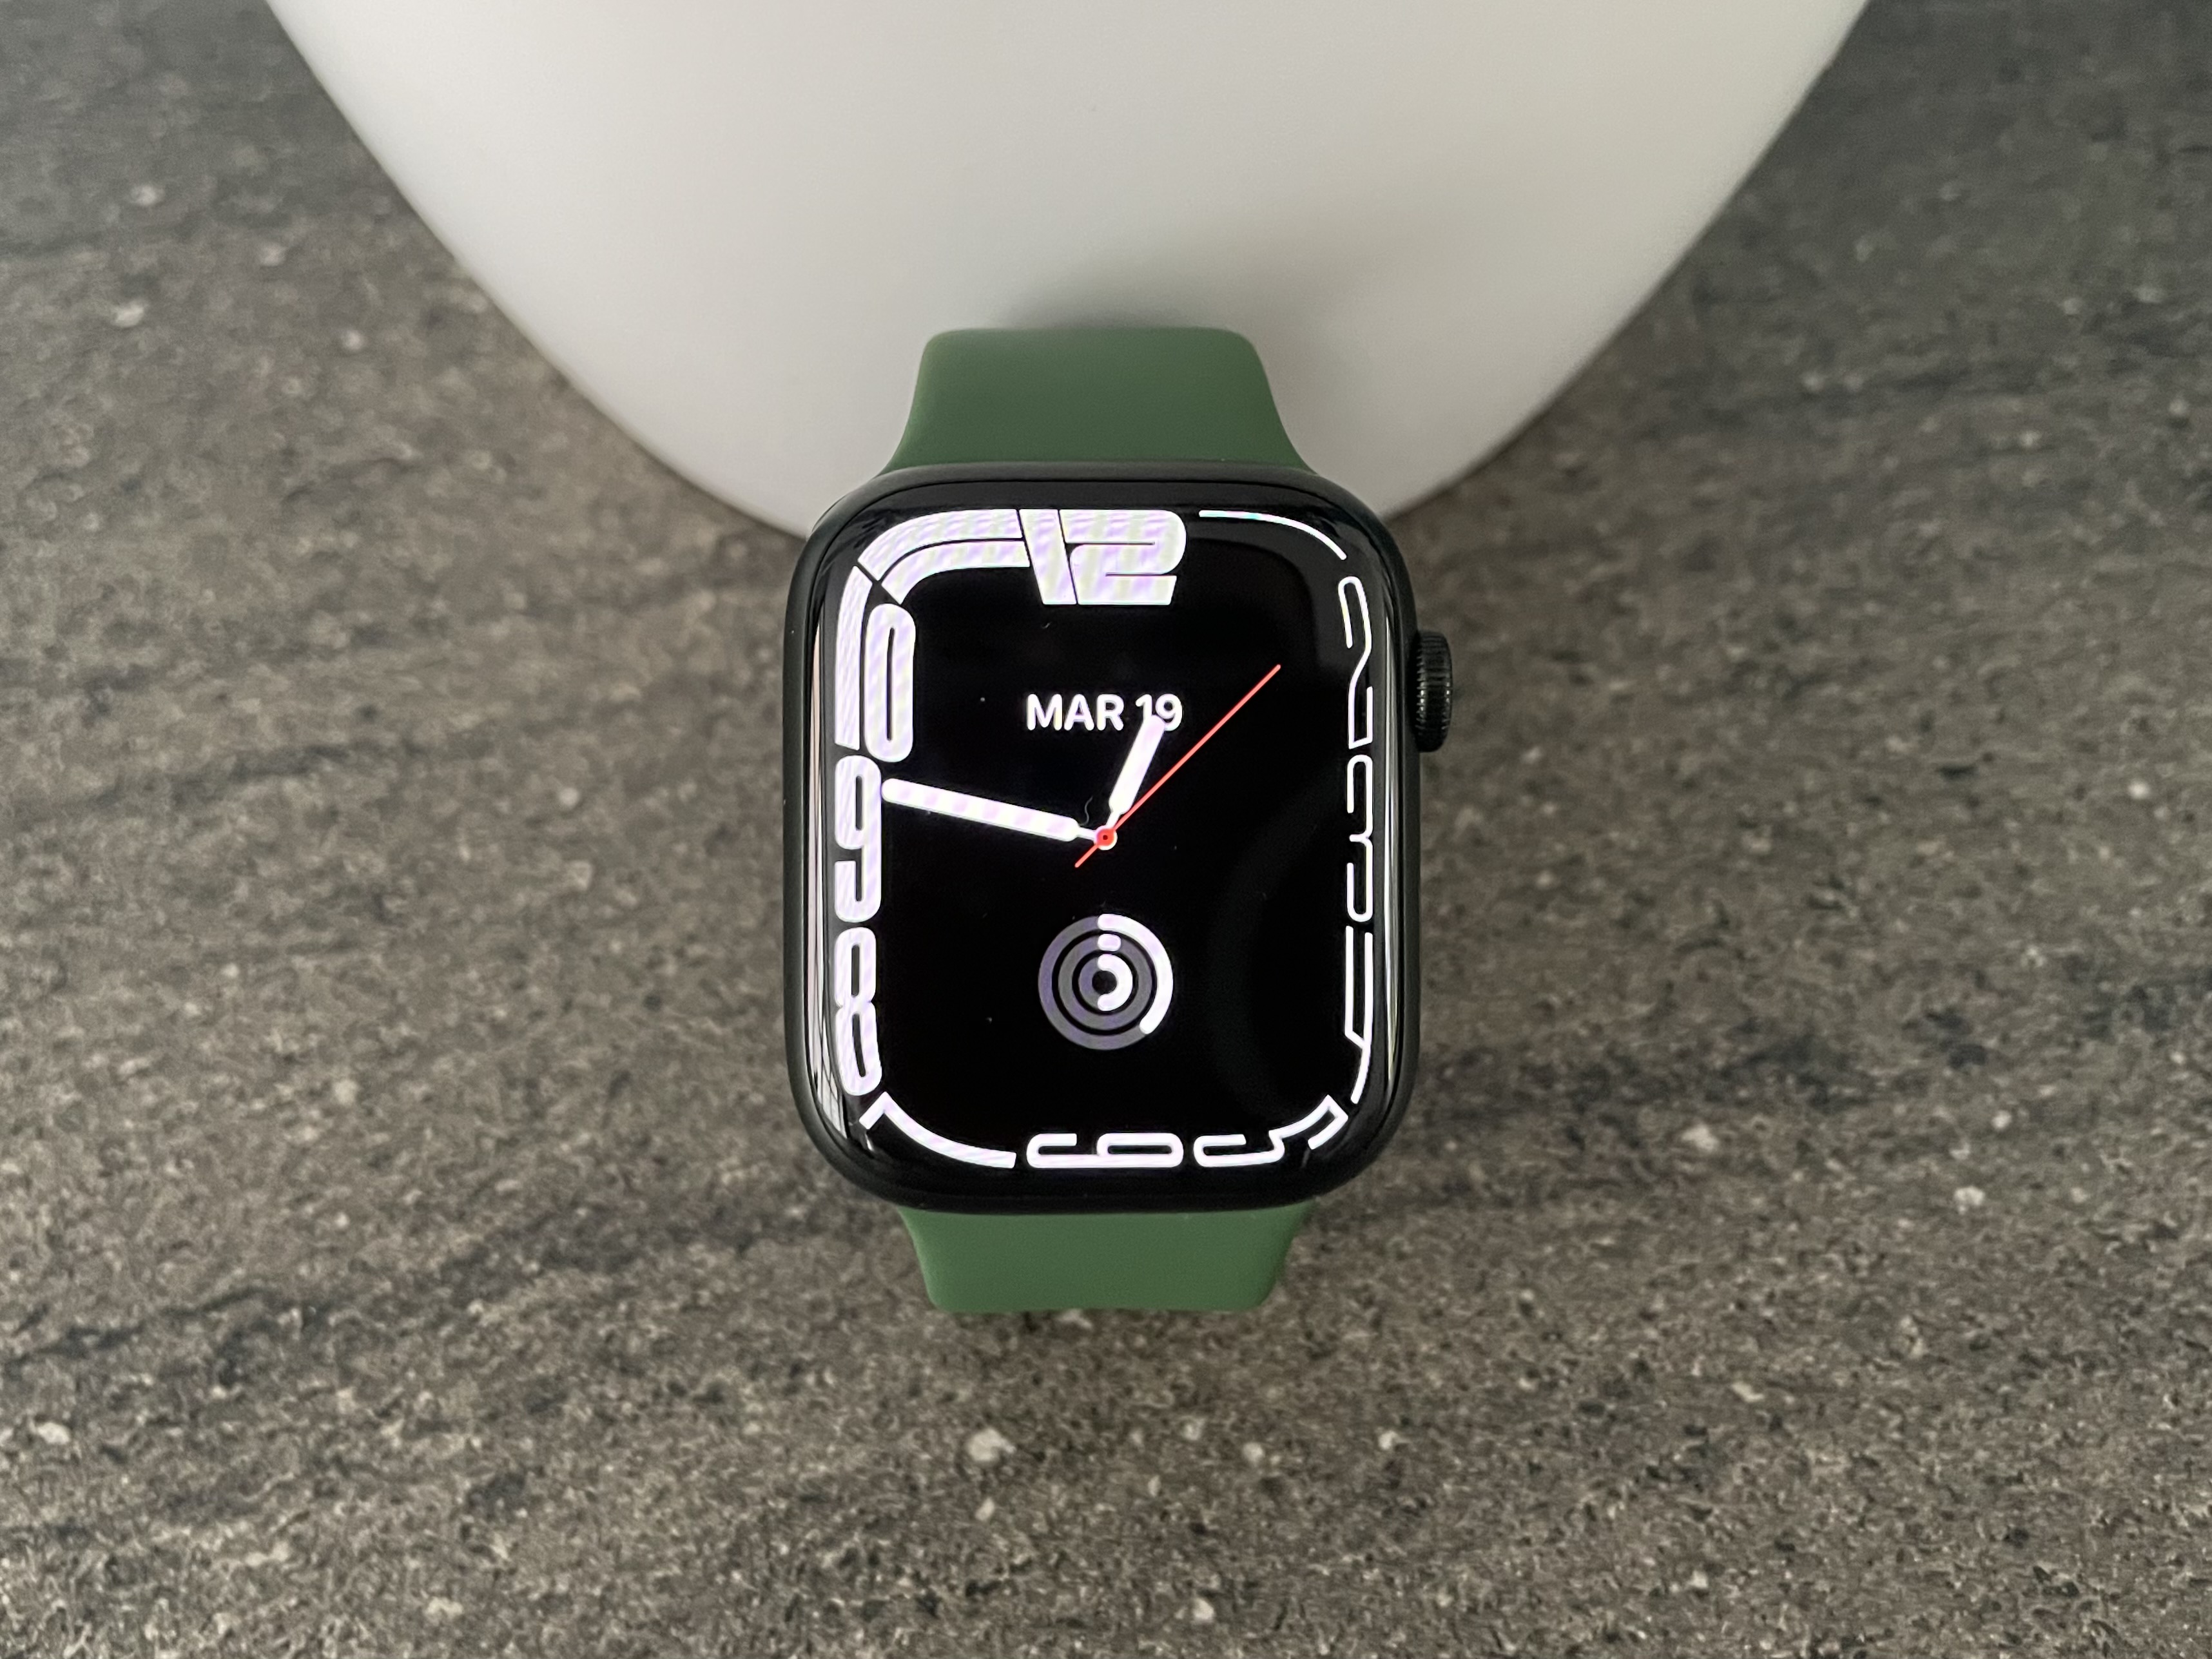 Comment l'Apple Watch est capable de détecter les symptômes d'une crise cardiaque